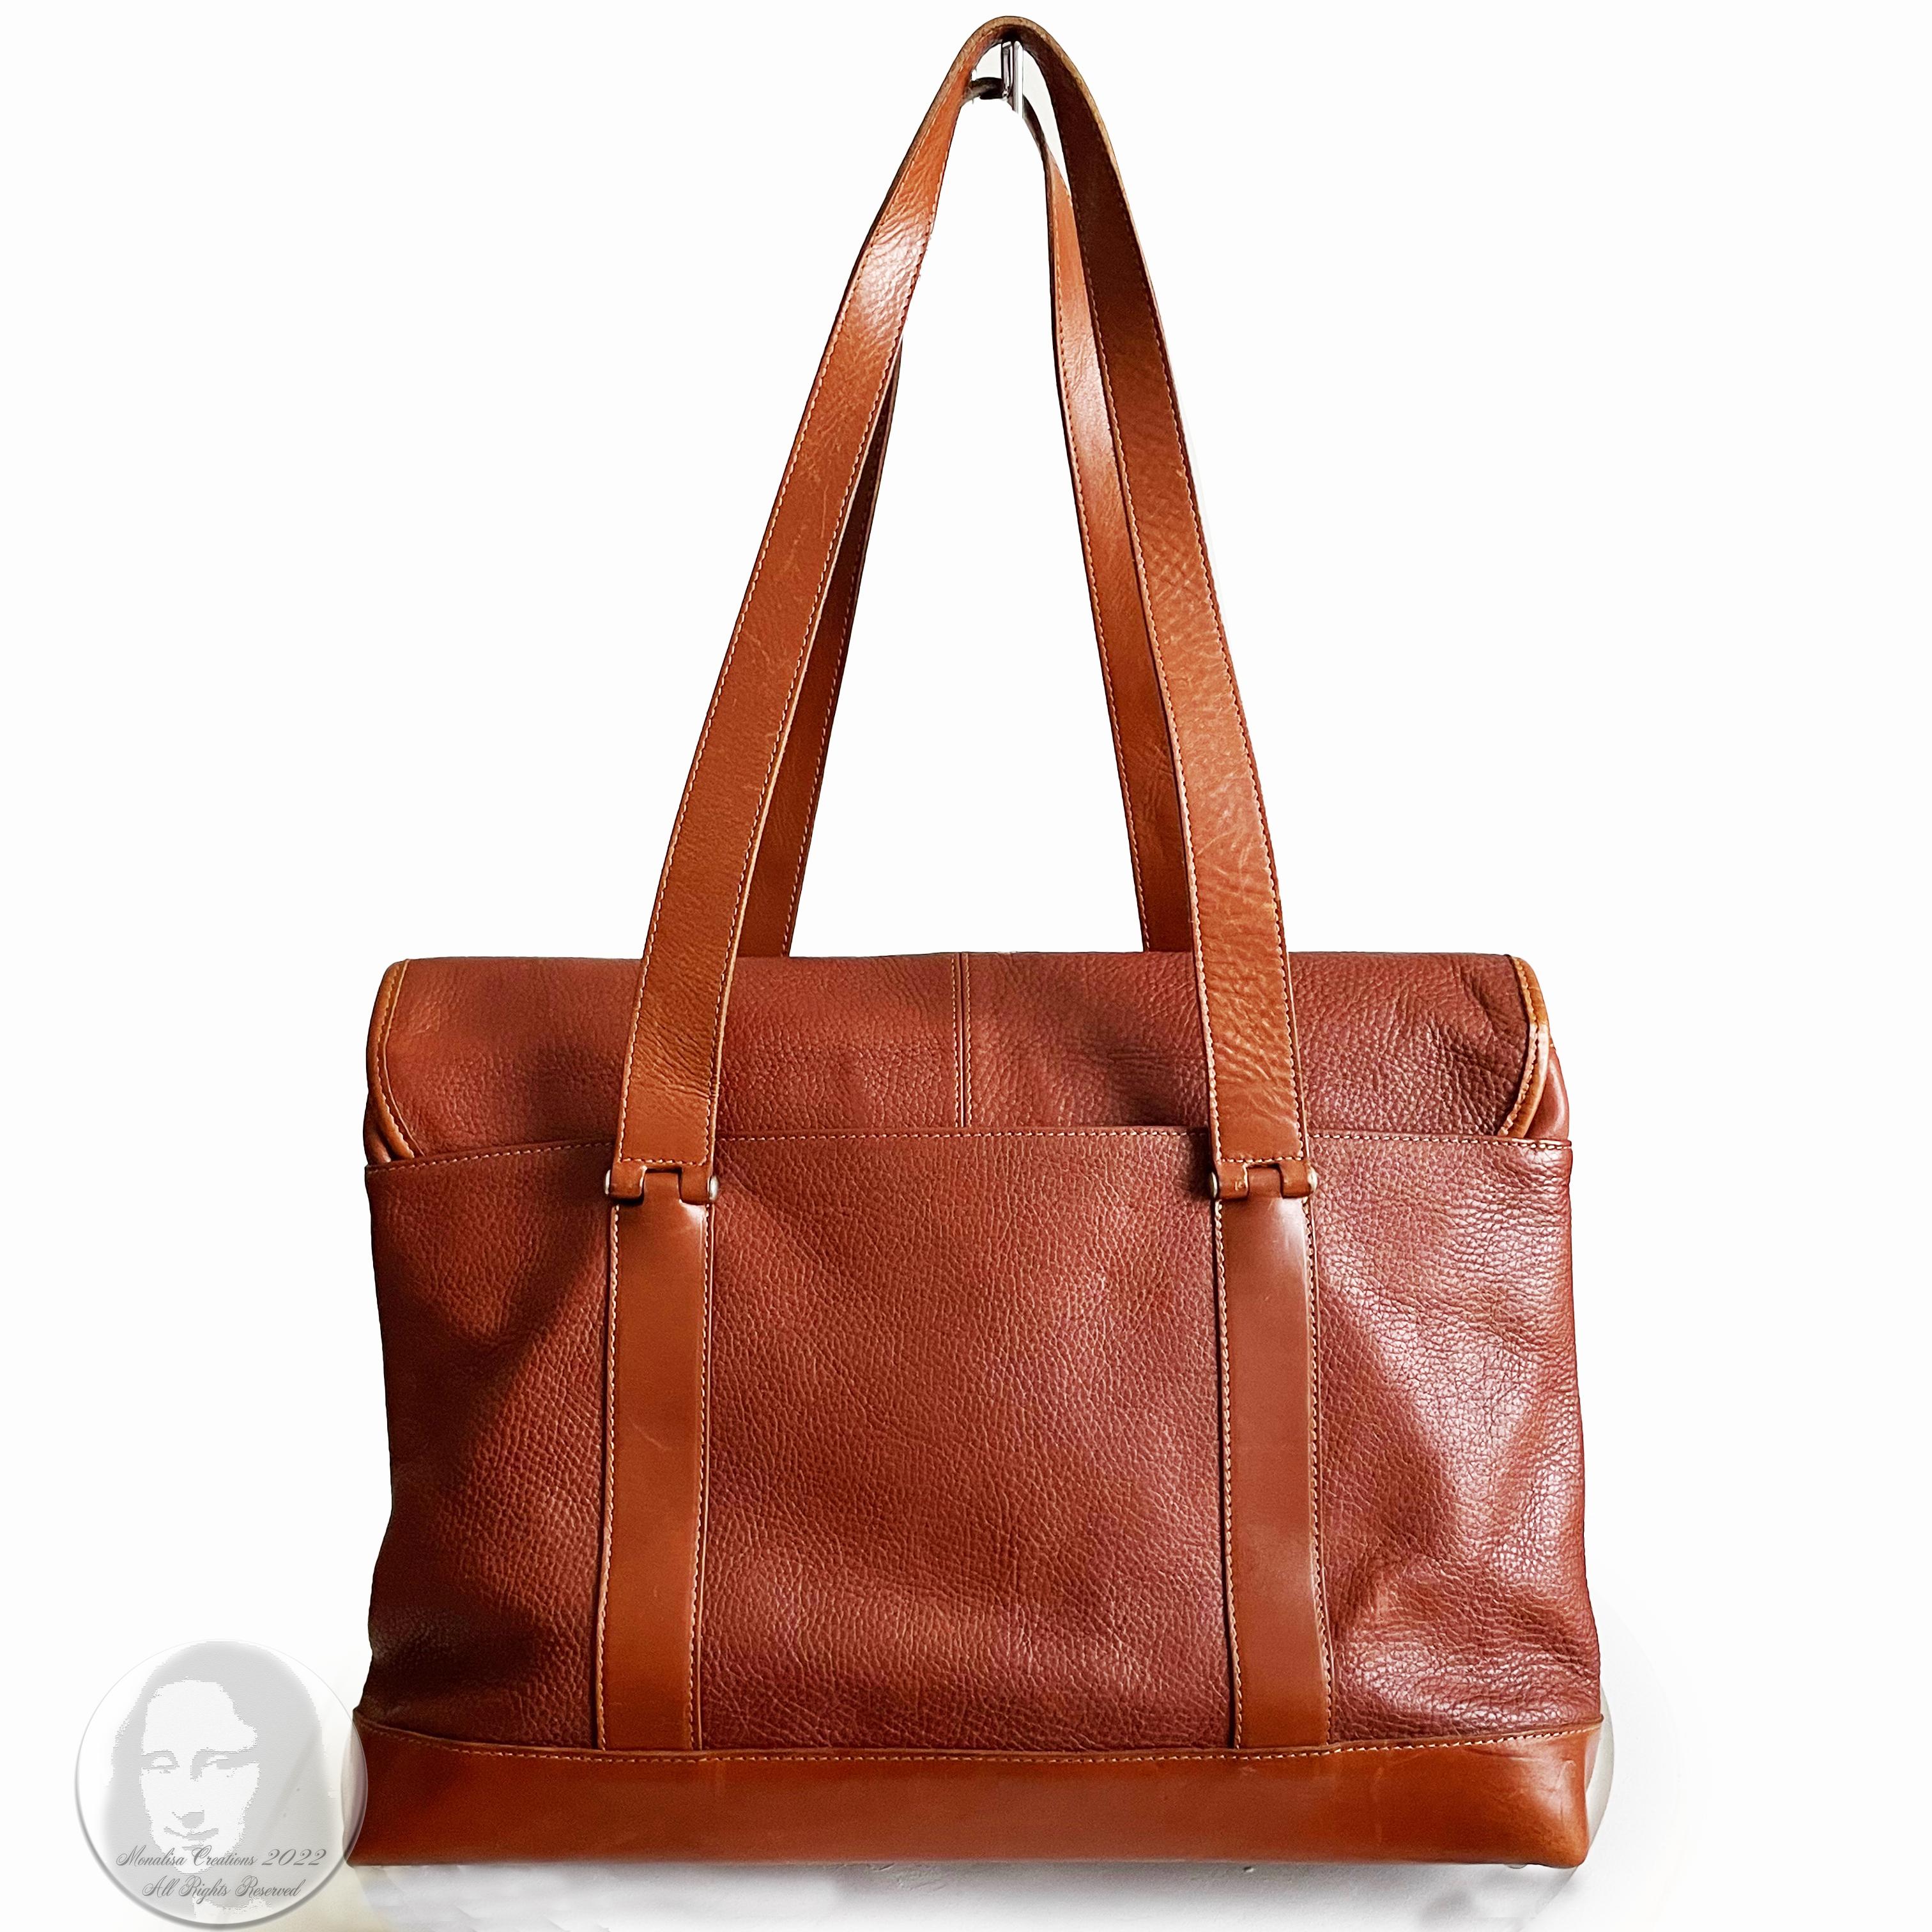 Hartmann Business Bag Briefcase Computer or Shoulder Bag British Tan Leather 5